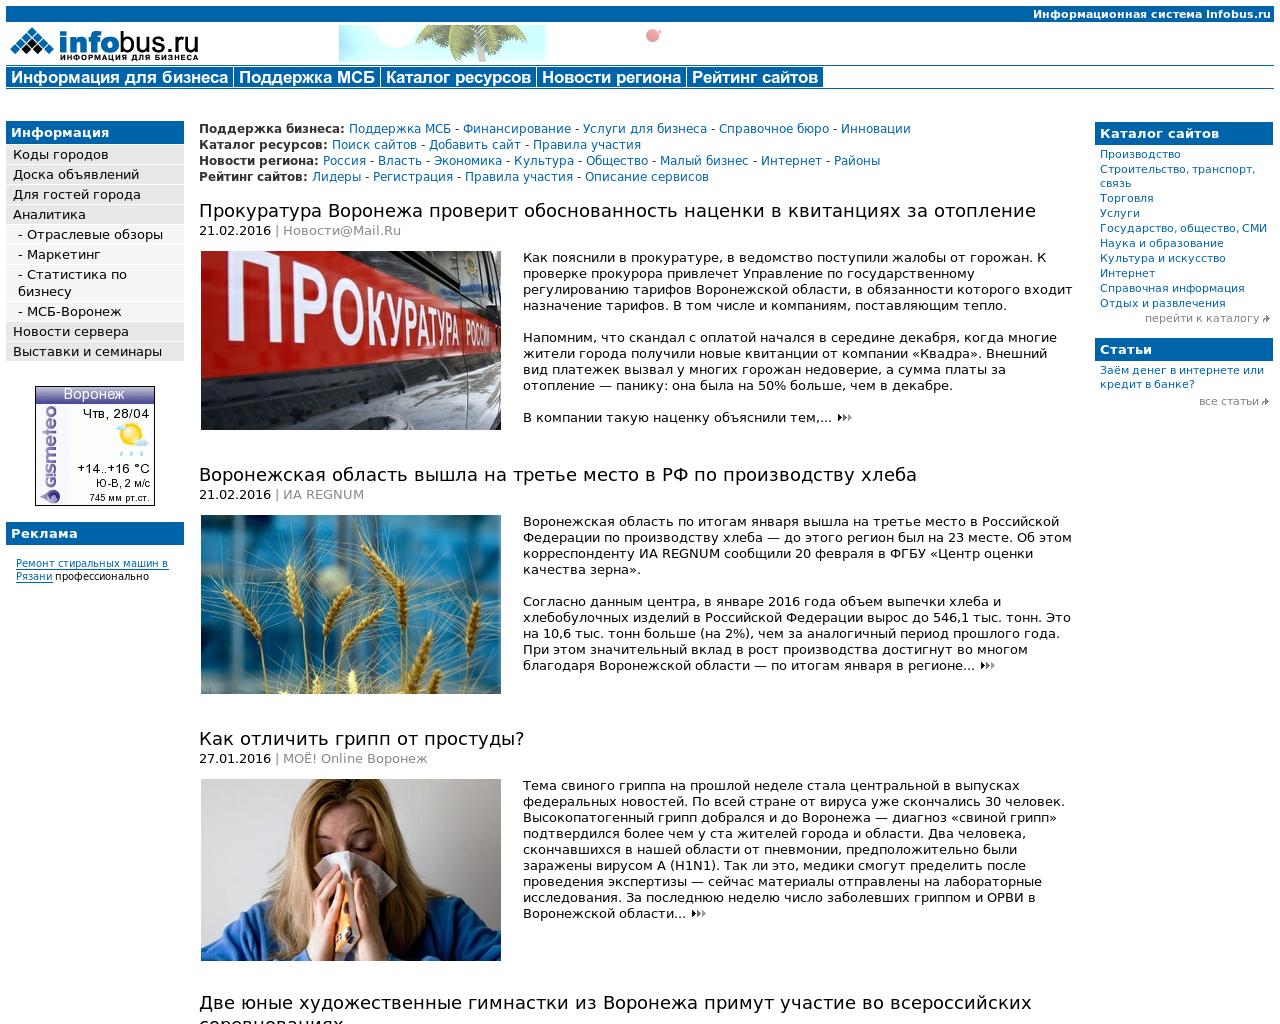 Изображение сайта infobus.ru в разрешении 1280x1024